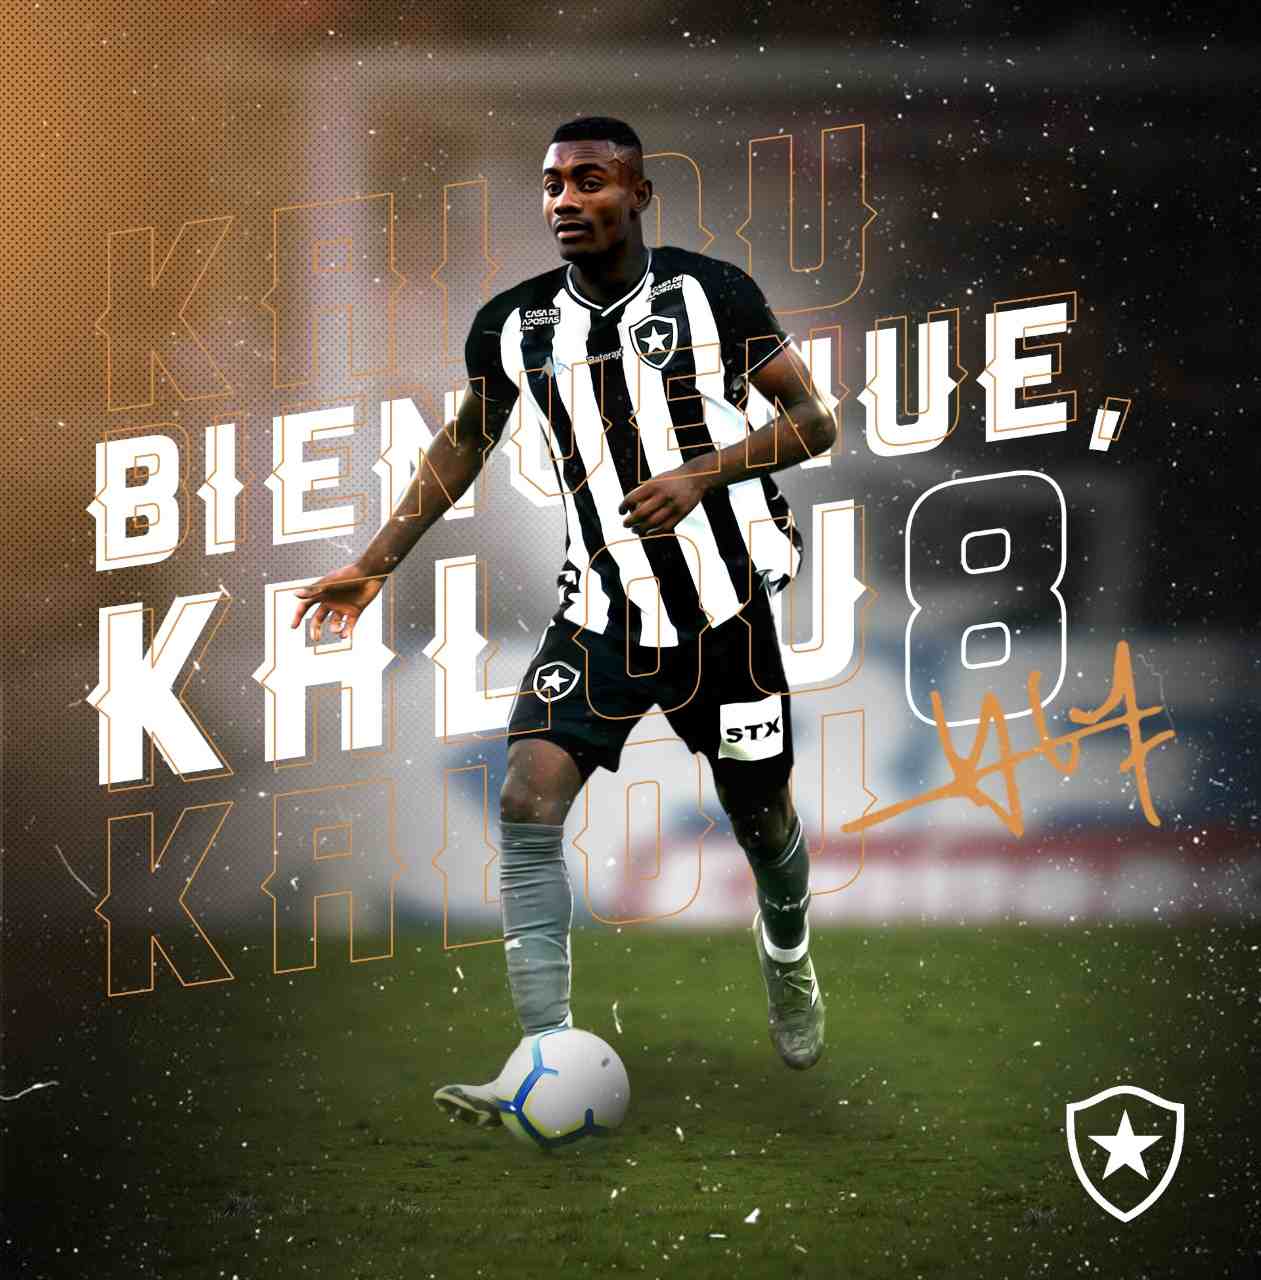 MORNO - Apesar de já estar contratado pelo Botafogo, a chegada de Kalou não vai ser nesta semana. O marfinense ainda está à espera de documentos vindos da Alemanha e sua chegada ao Brasil provavelmente não será no sábado.